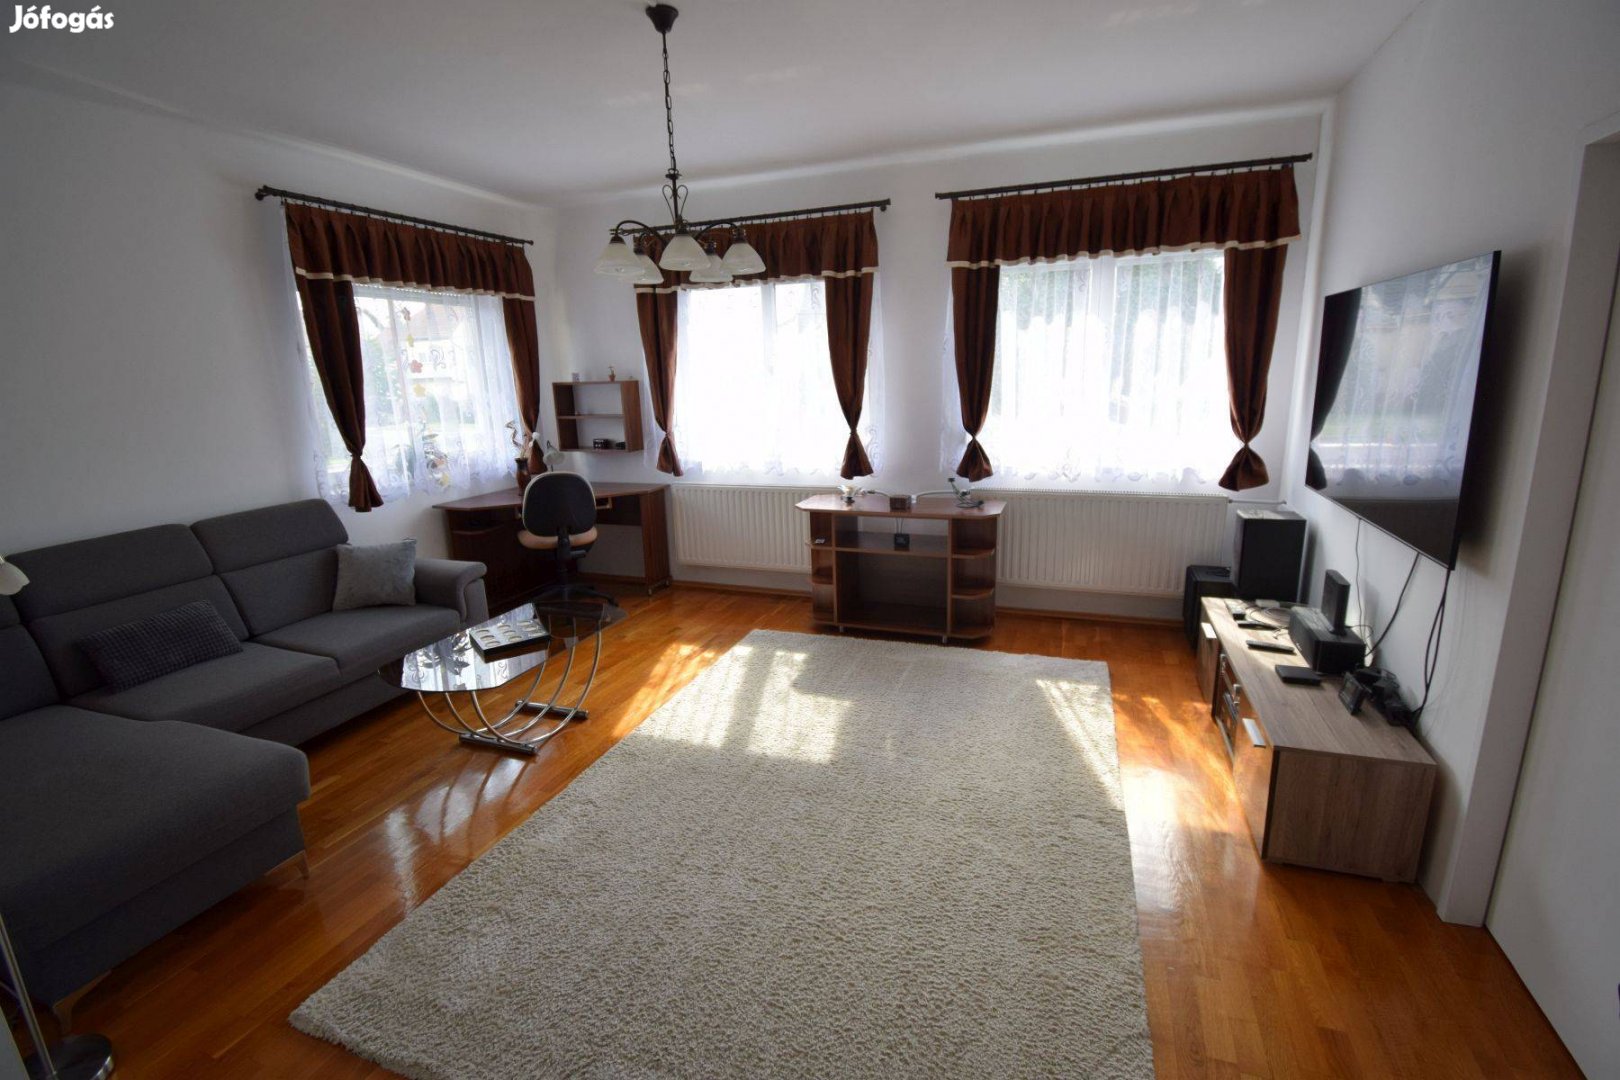 Bükön, az Alsó-büki városrészen, kiváló állapotú családi ház eladó